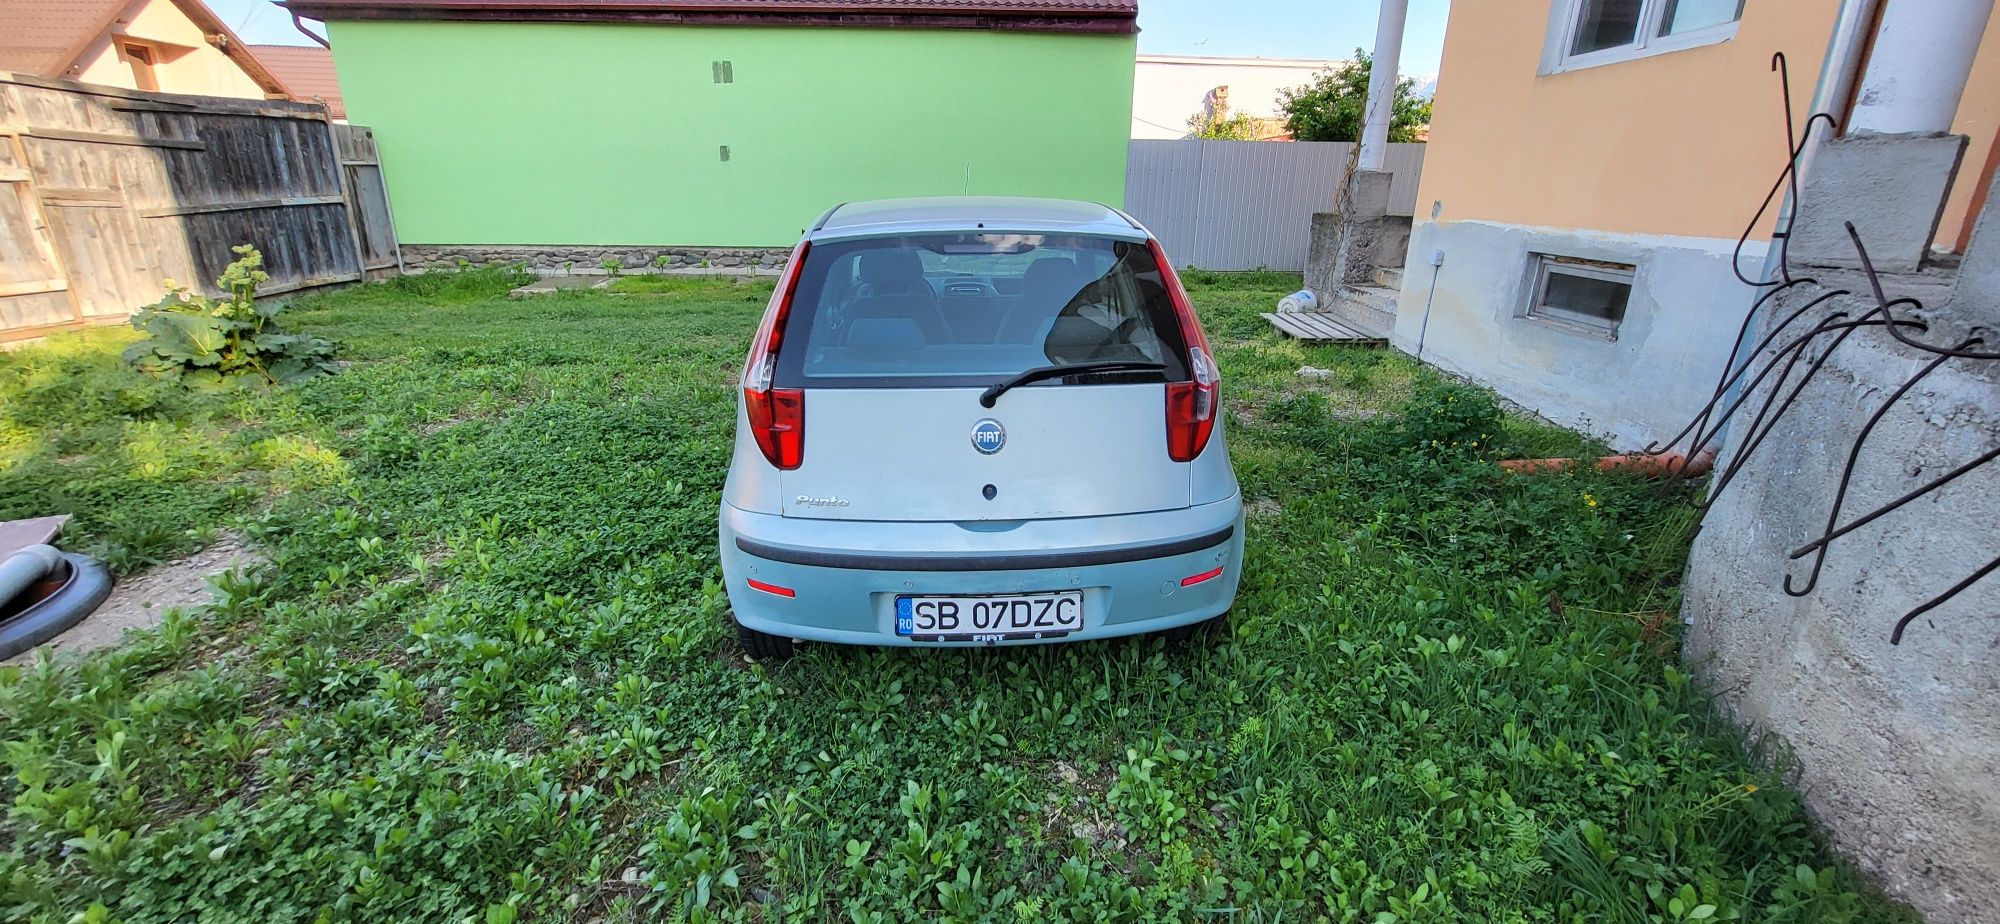 Vând Fiat Punto 2003